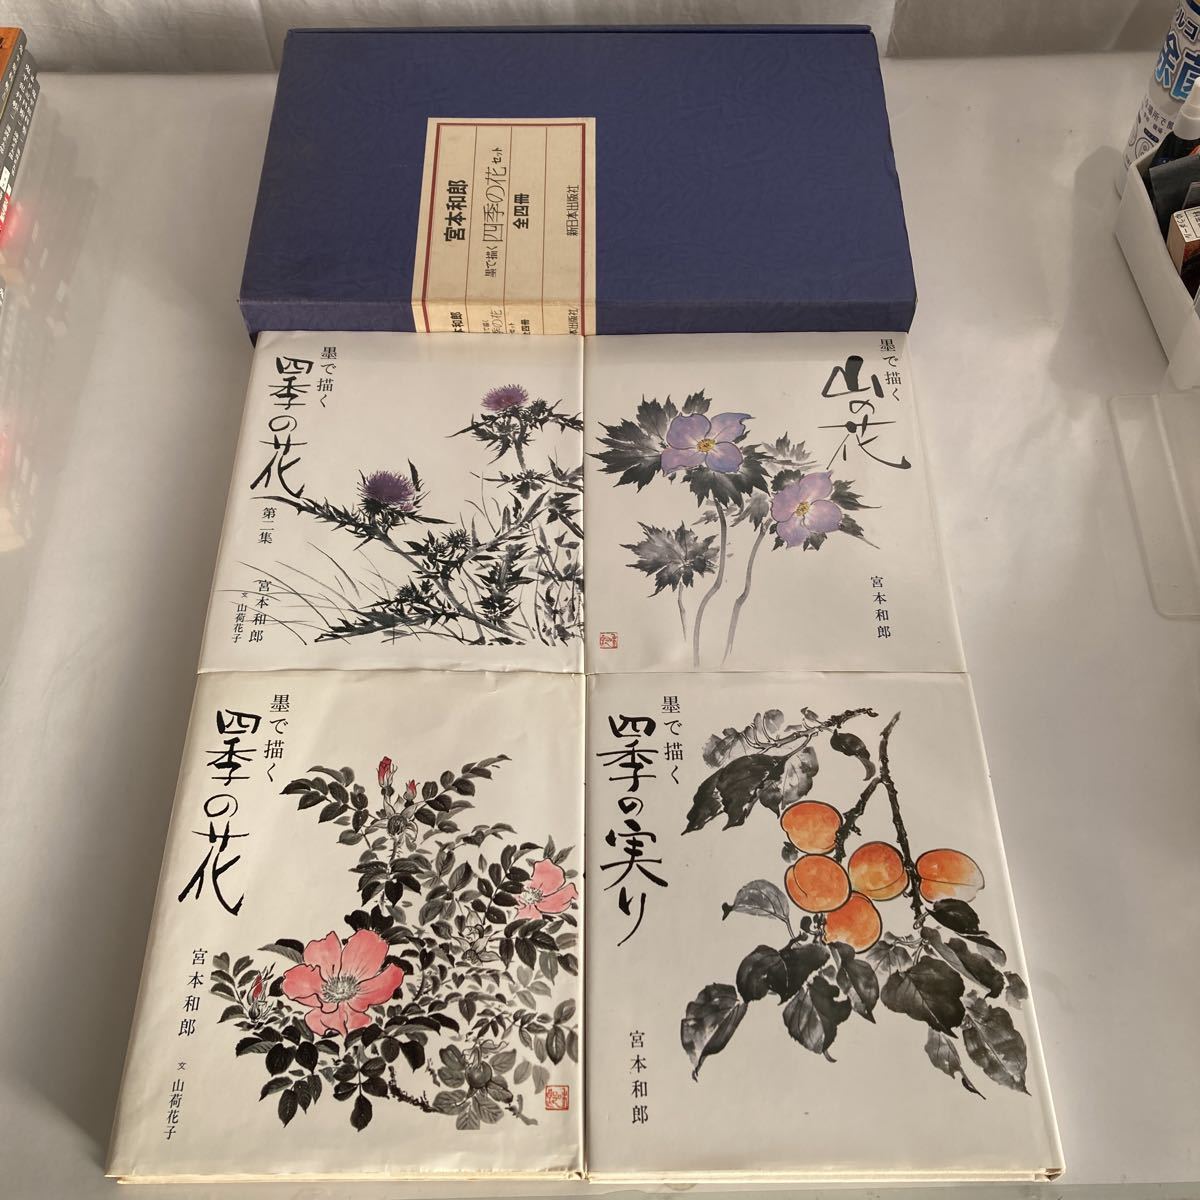 ◇ Vier Jahreszeiten Blumen Zeichnung mit Tinte Set von 4 Bänden Kazuo Miyamoto Shin Nihon Shuppansha 1987 *Bibliotheksstempel enthalten Siehe Foto *Wenn Sie die Box nicht benötigen, Sie können Letter Pack Plus ♪GM01 verwenden, Malerei, Kunstbuch, Sammlung, Kunstbuch